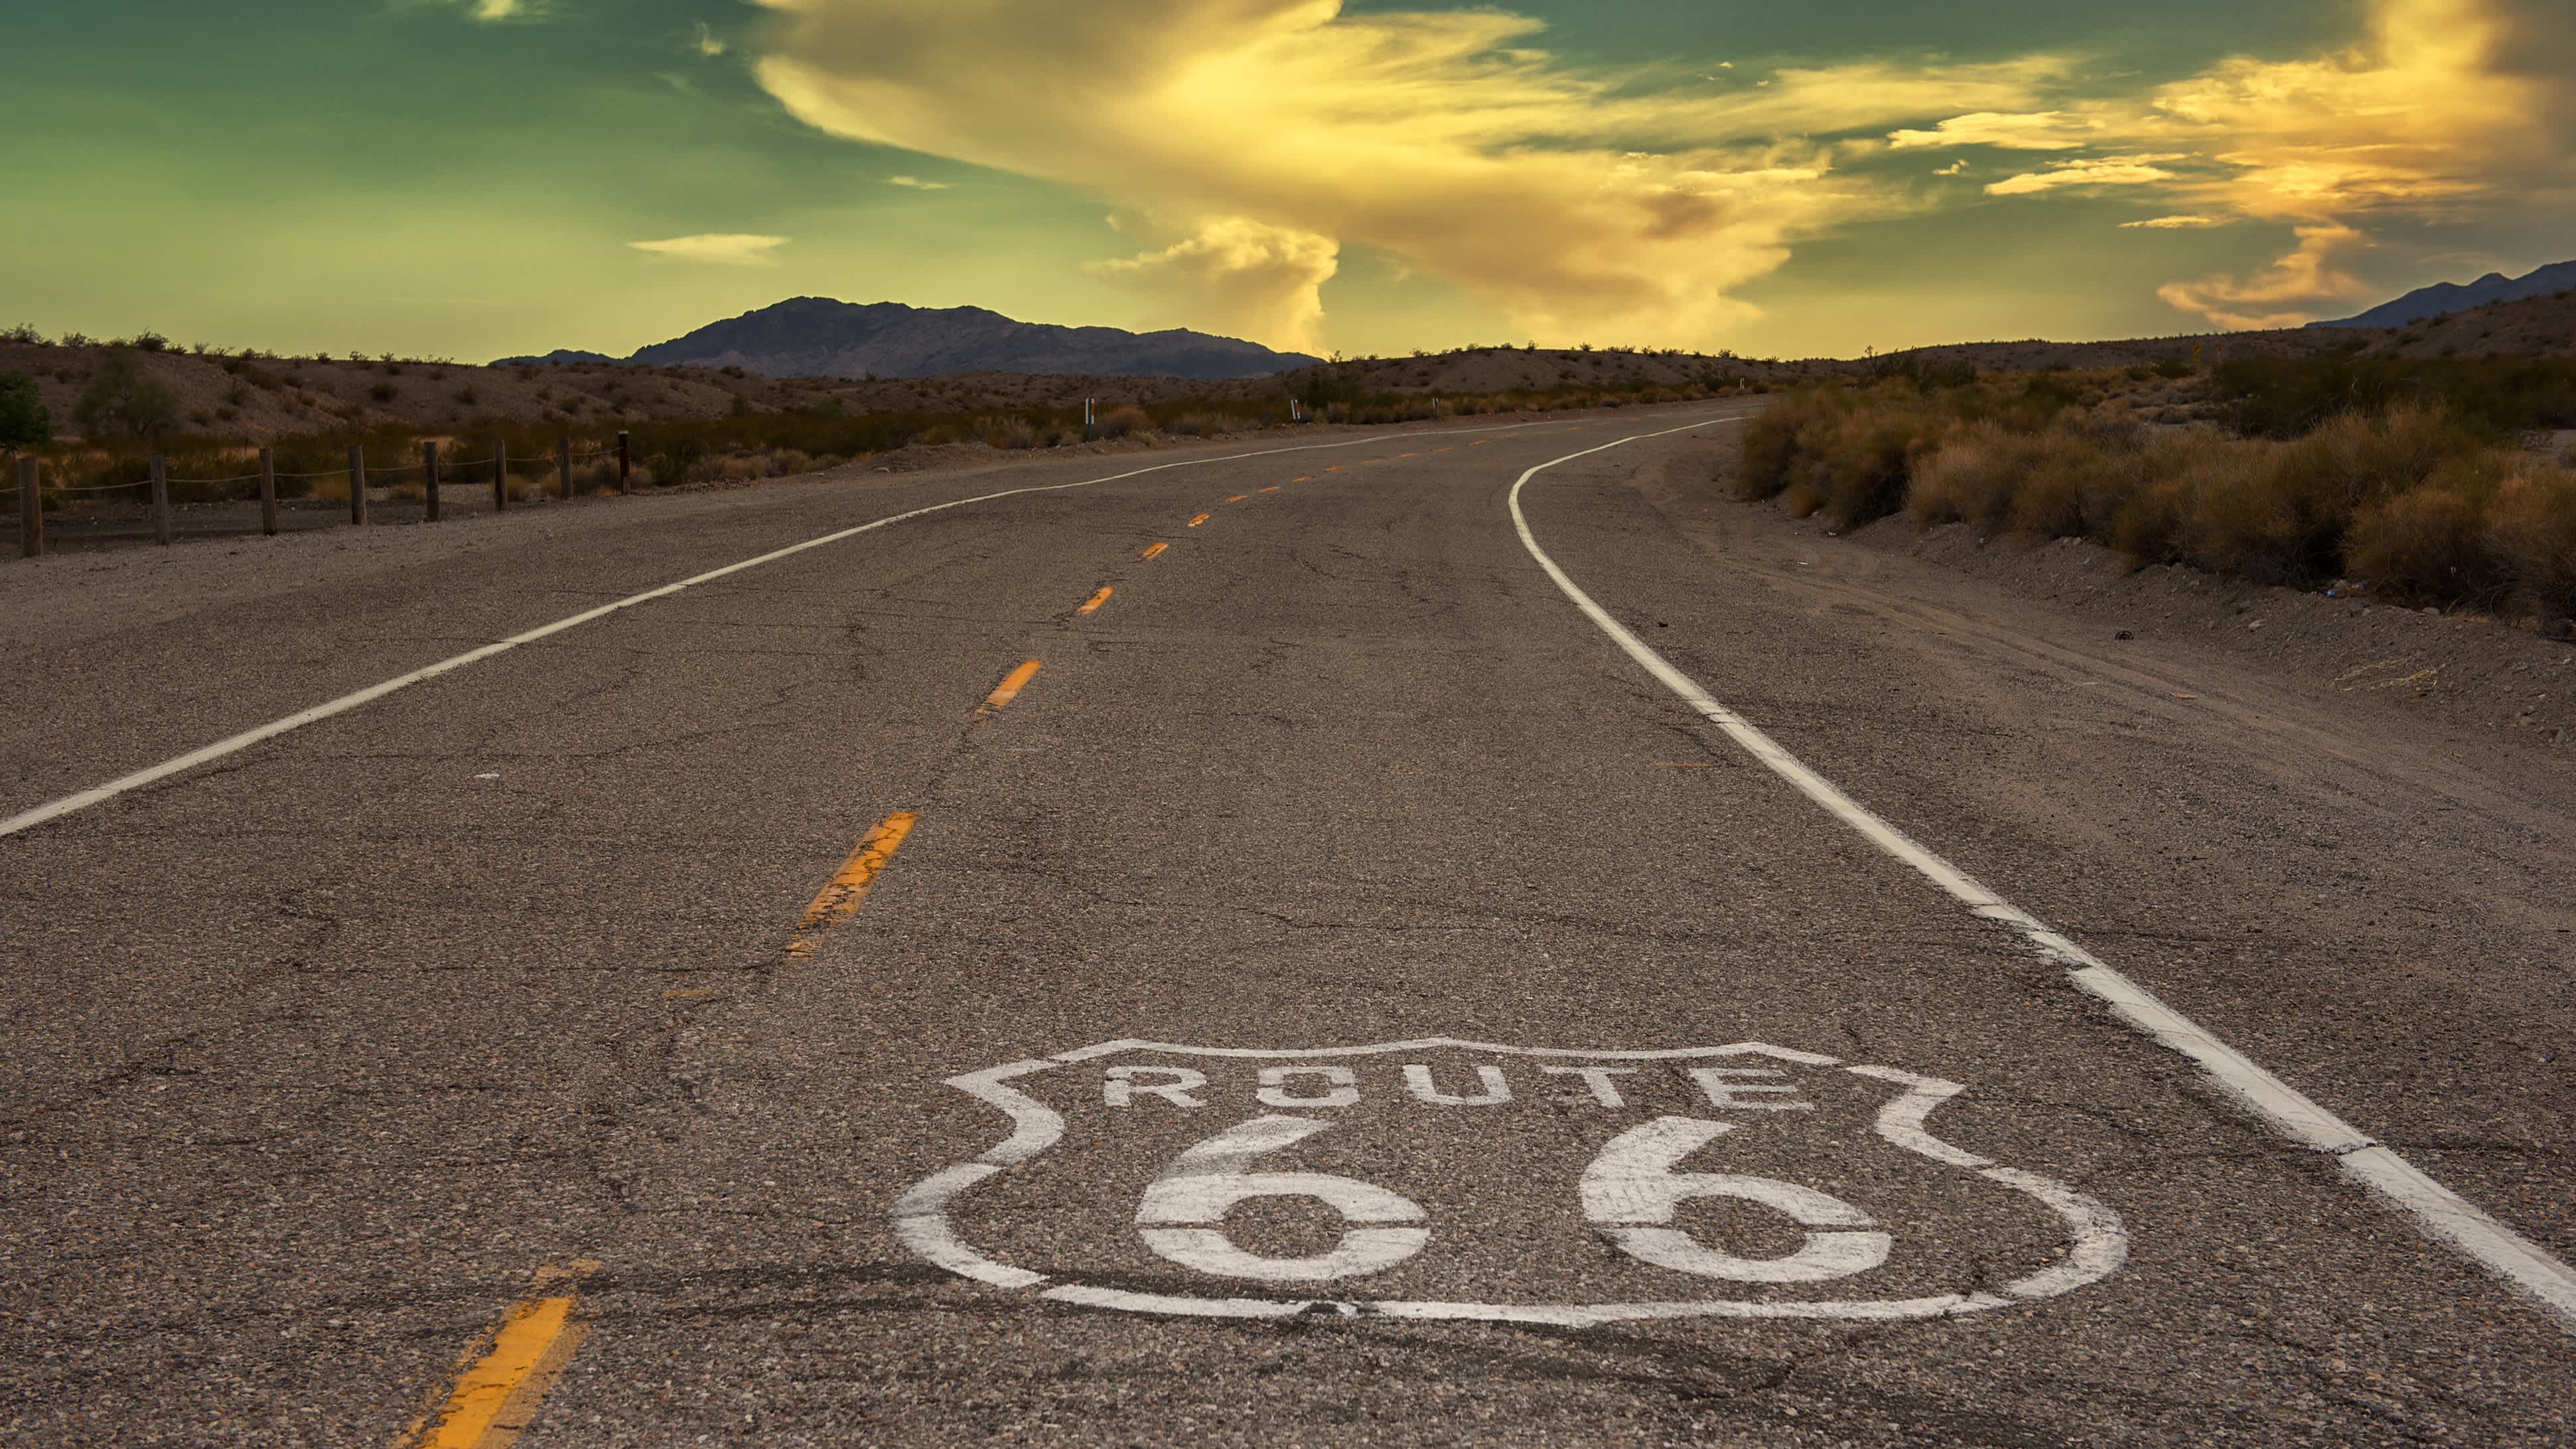 Vue panoramique sur la célèbre Route 66 qui traverse les USA d'Est en Ouest. Un itinéraire de légende à découvrir pendant votre road trip aux Etats-Unis.